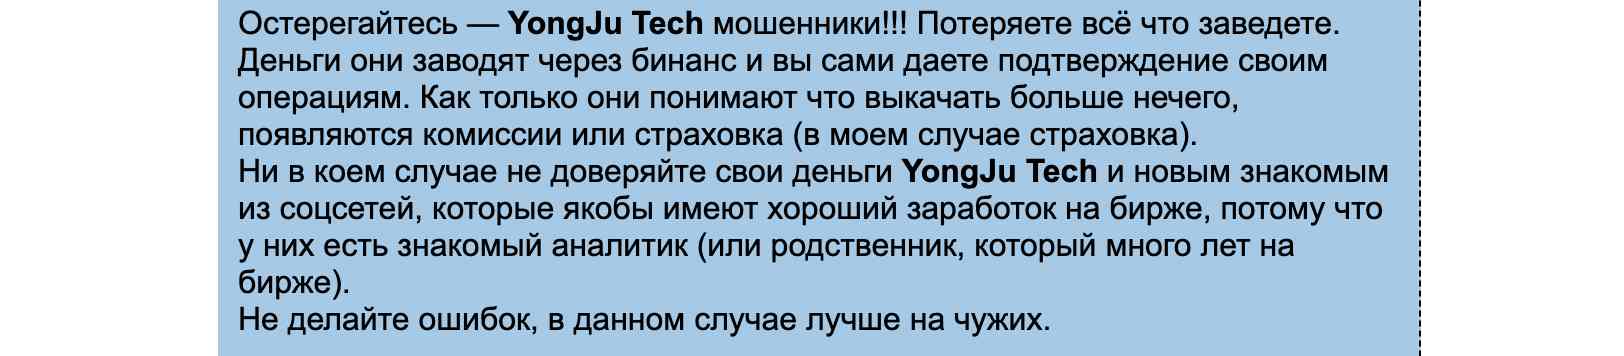 YongJuTech — псевдоброкерская платформа от опытных жуликов